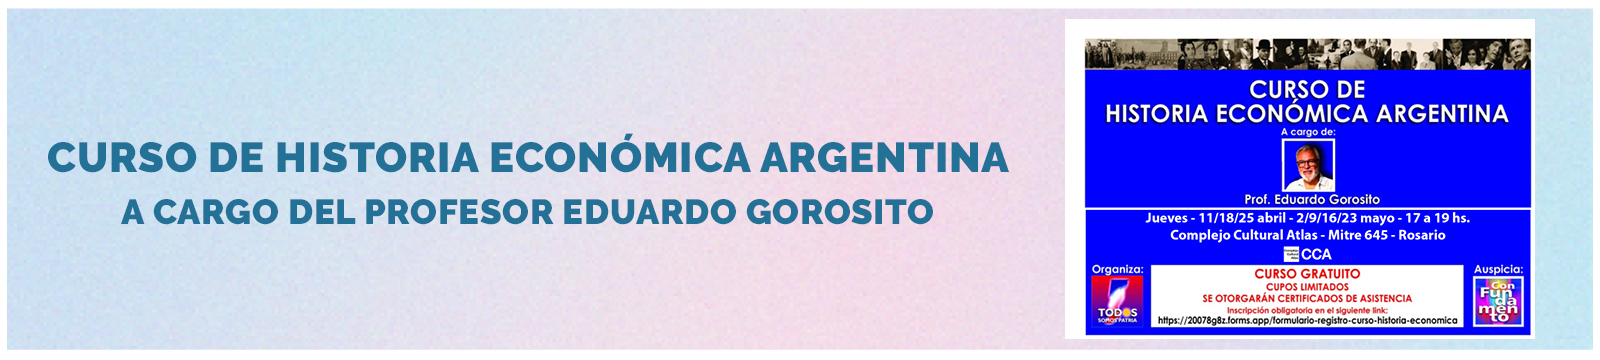 Curso de Historia Económica Argentina